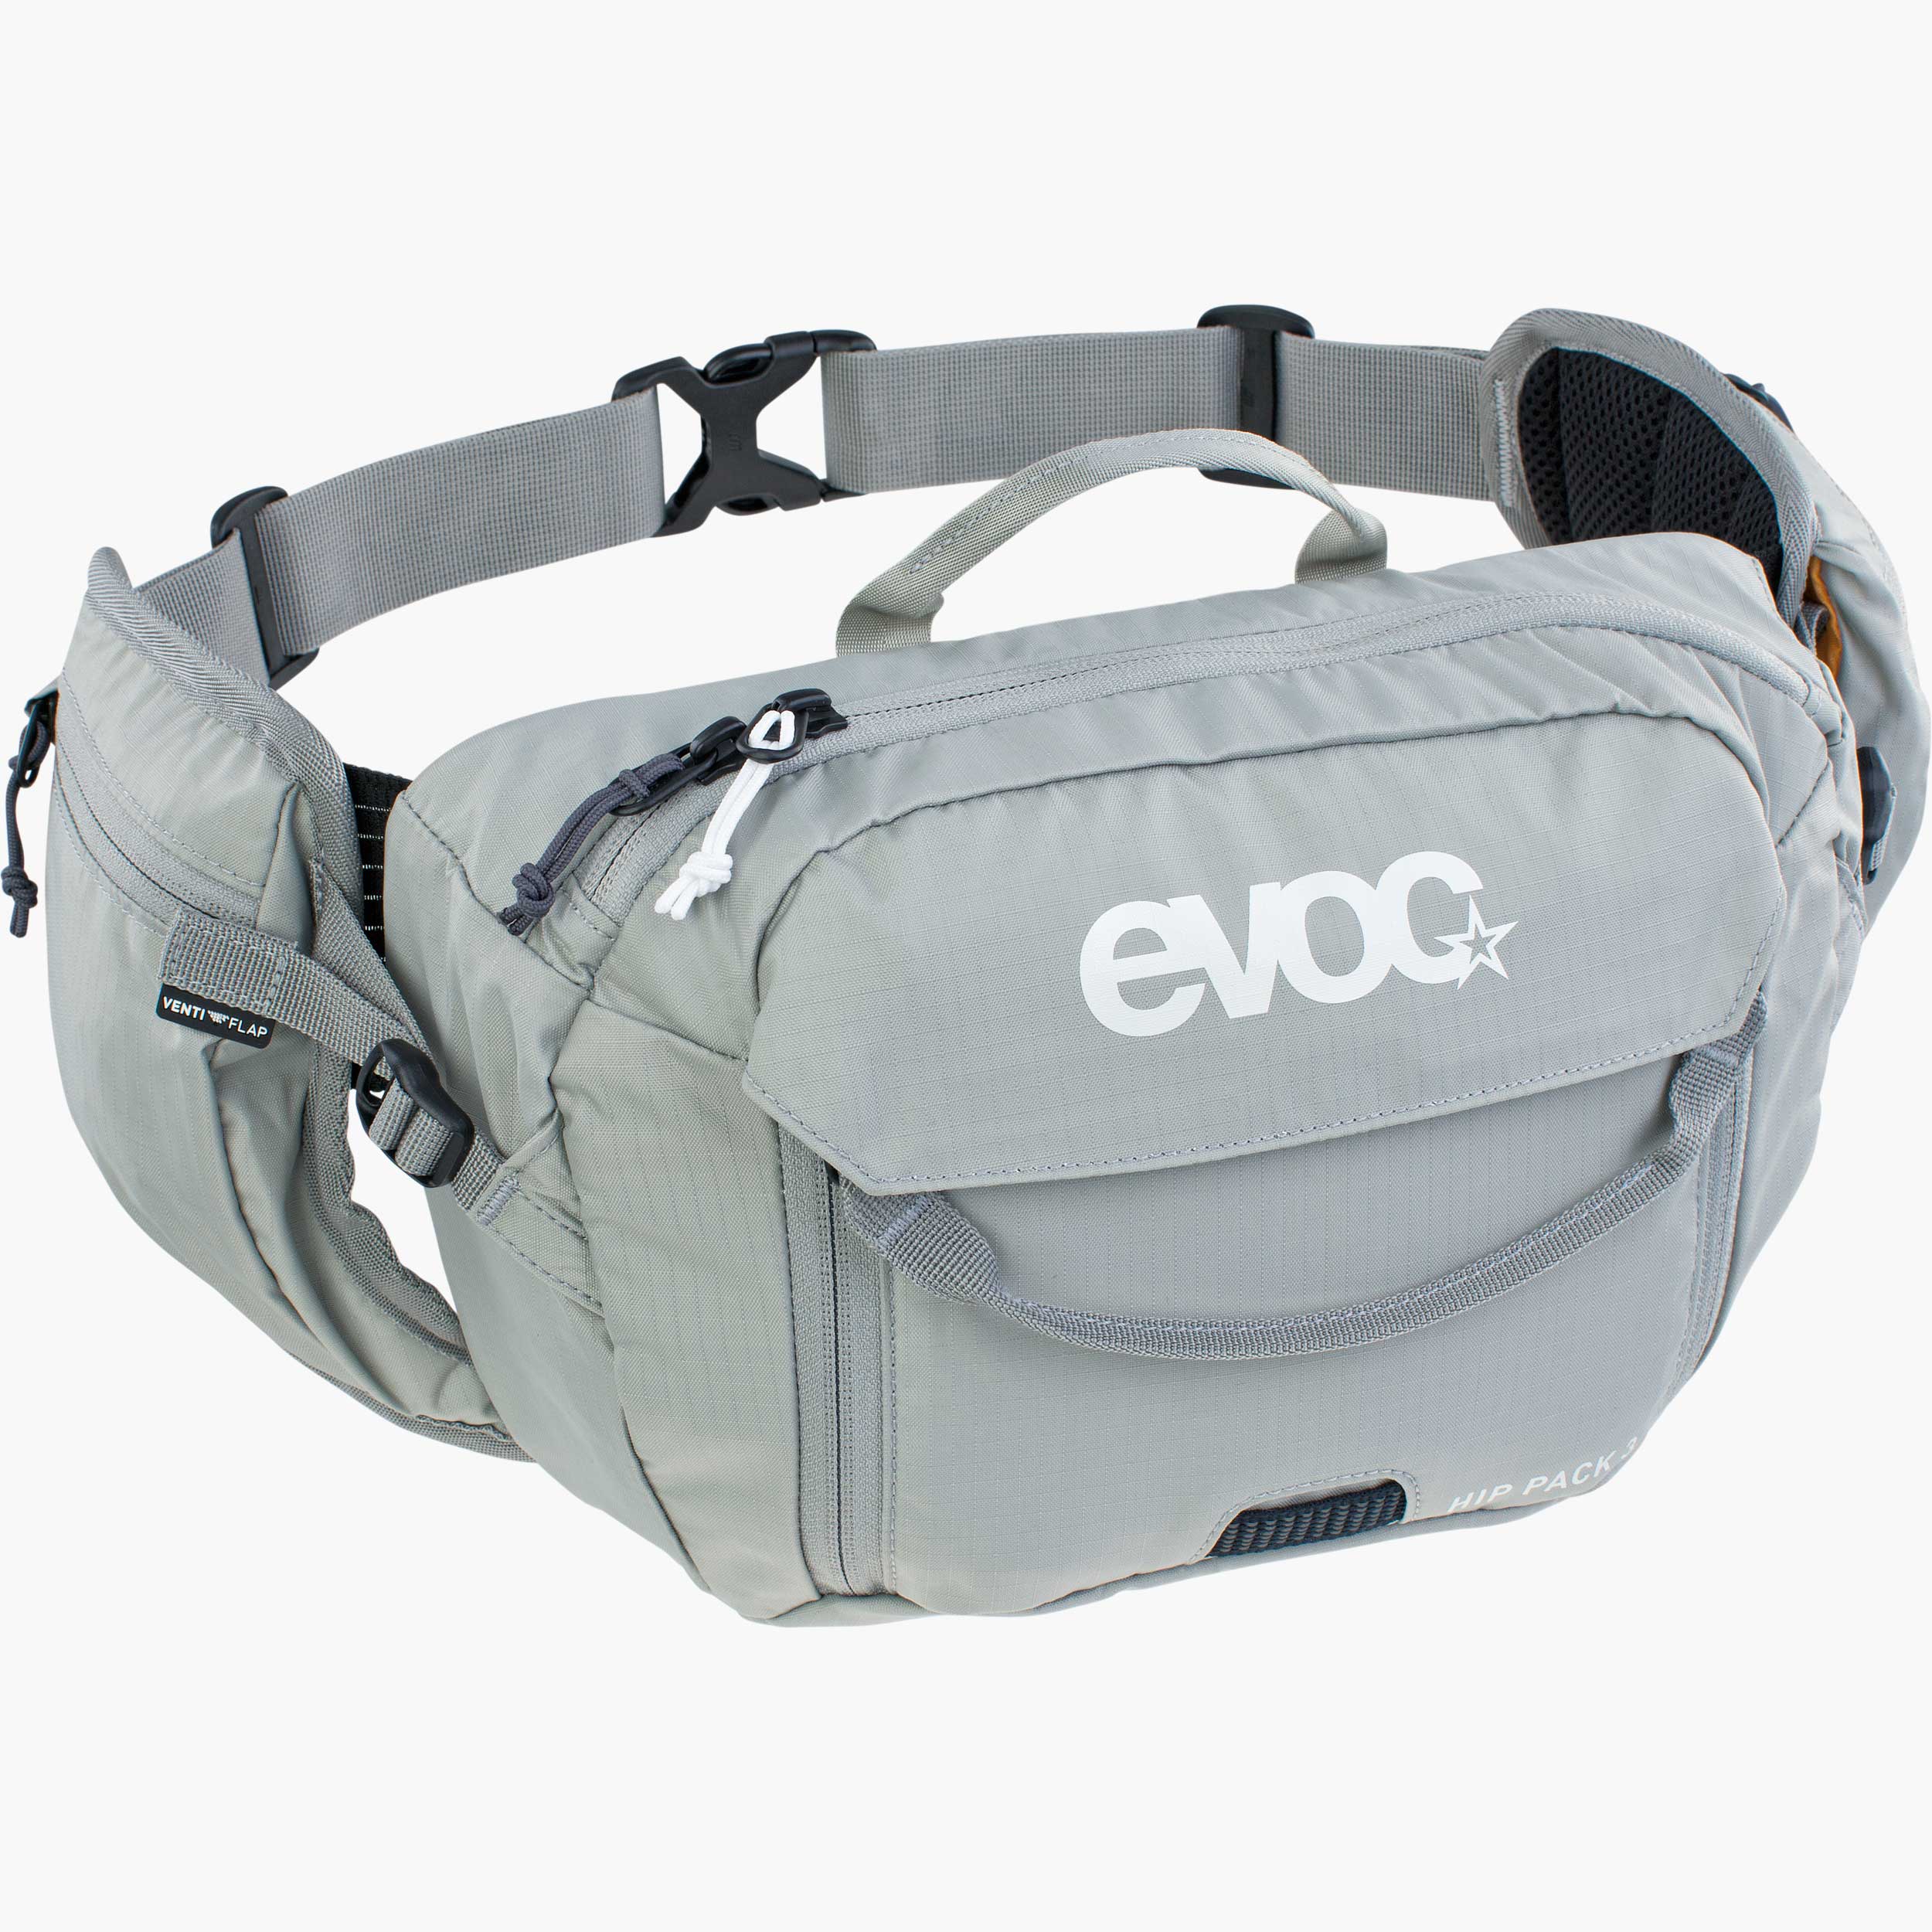 Evoc Hip Pack Pro 3L Black/Carbon Grey without bladder Bag 